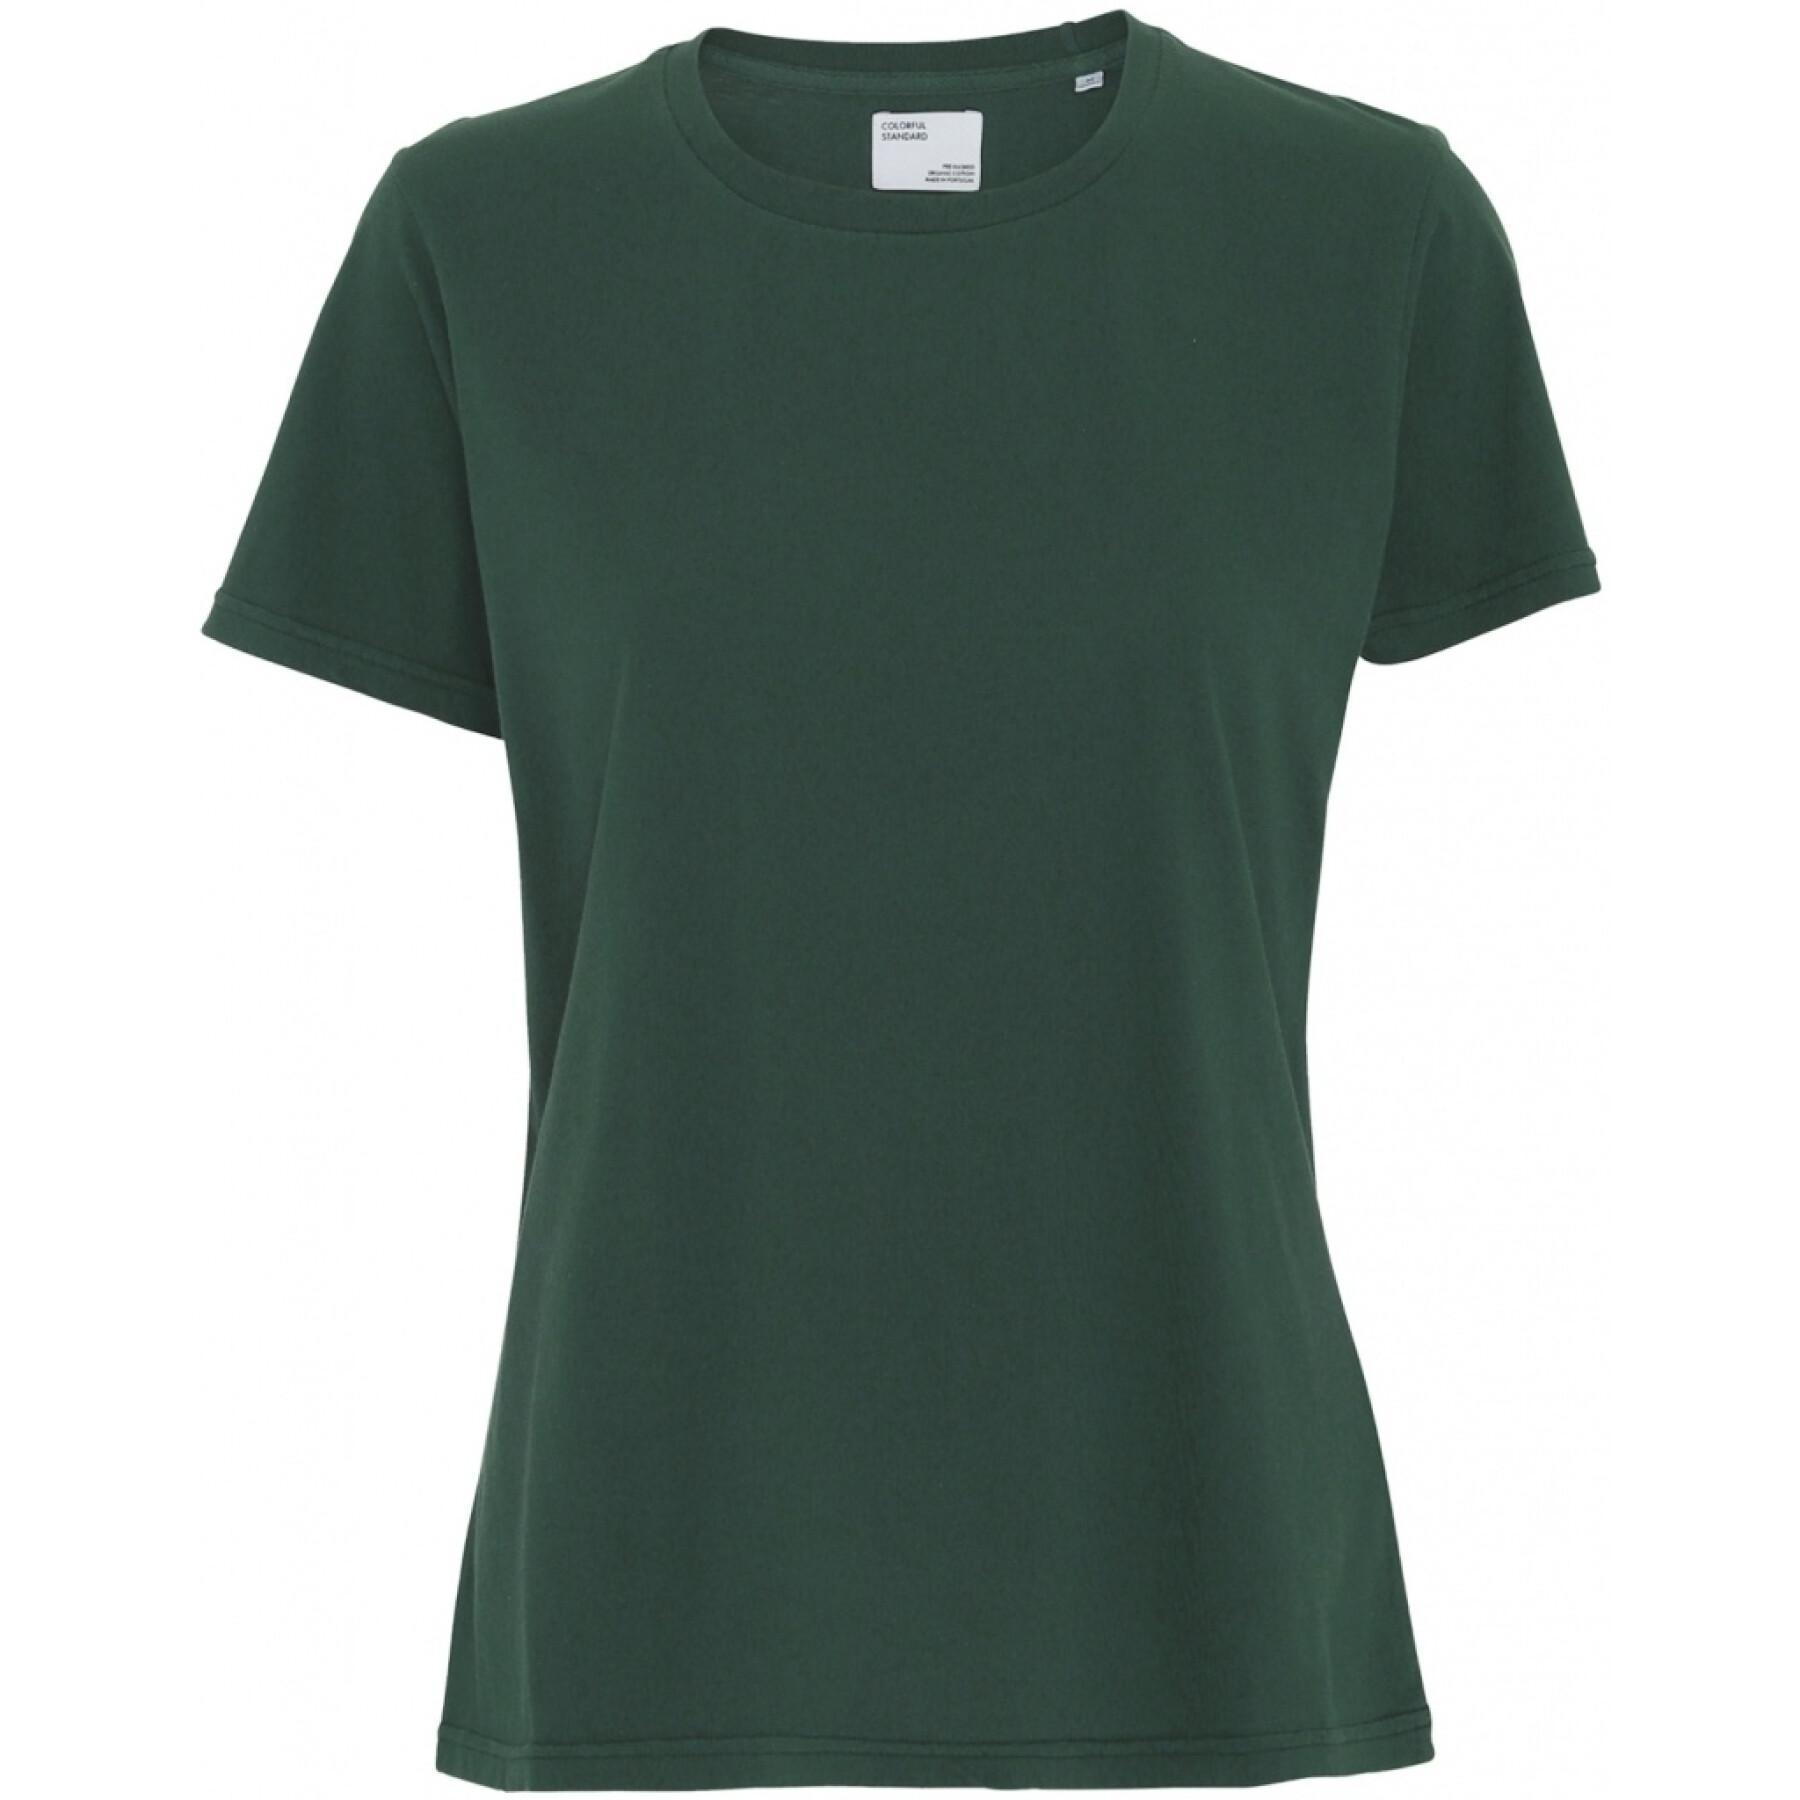 T-shirt femme Colorful Standard Light Organic emerald green